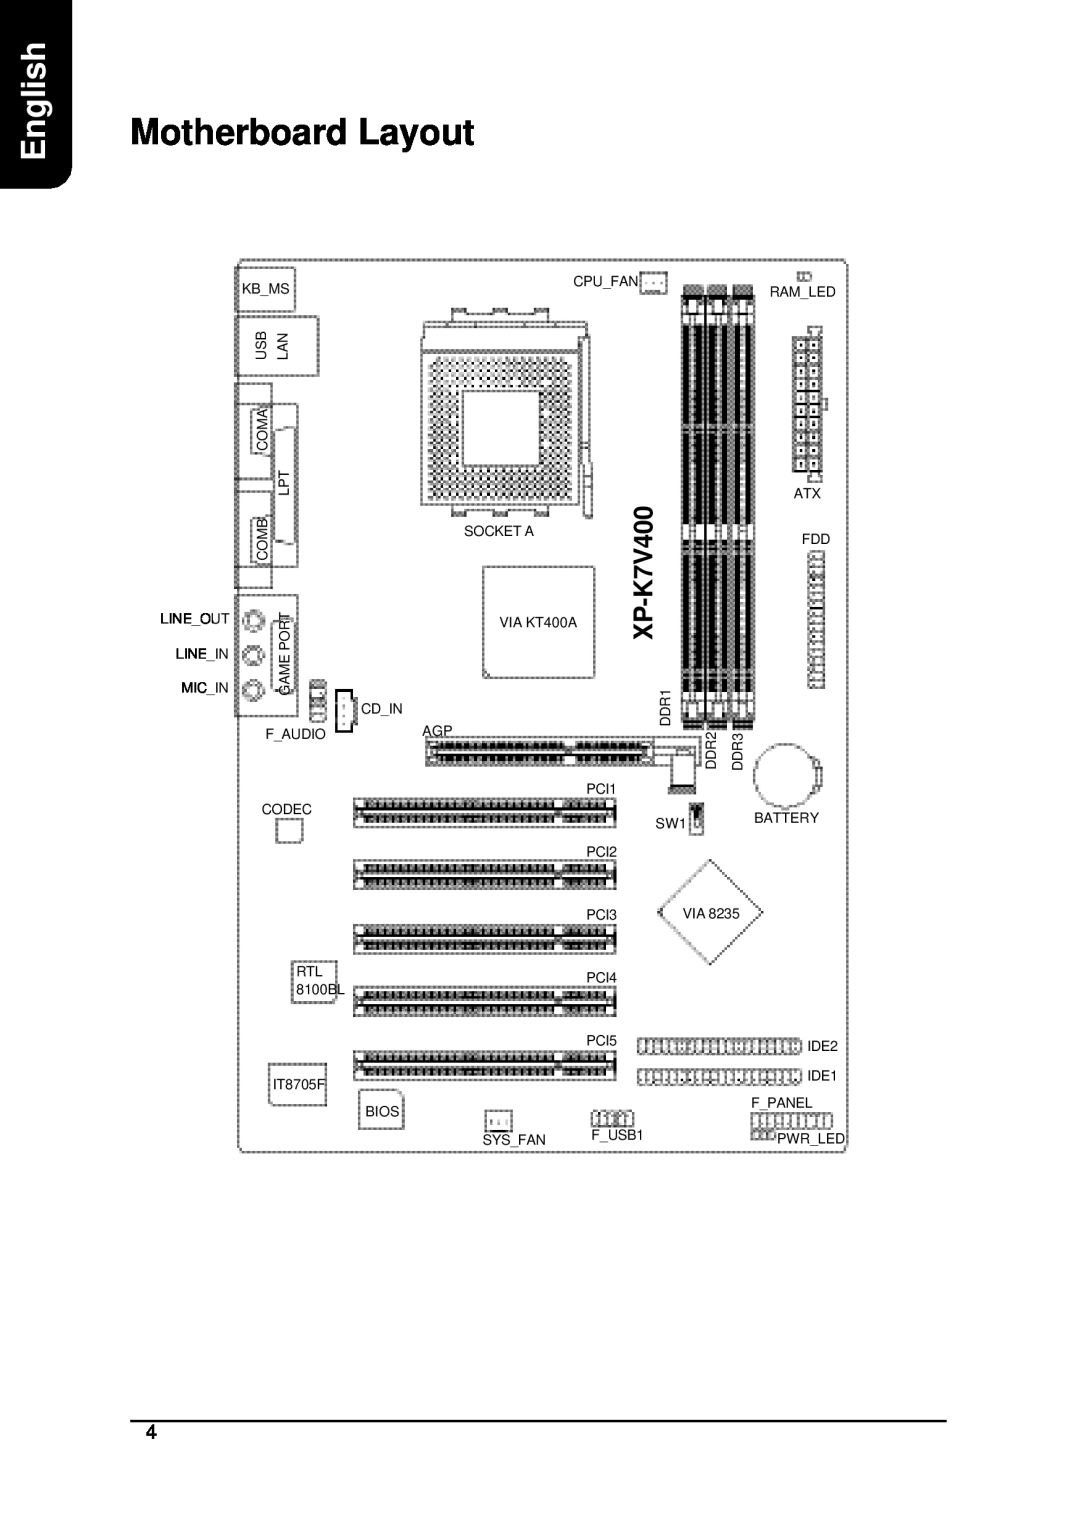 AMD XP-K7V400 user manual Motherboard Layout, English 